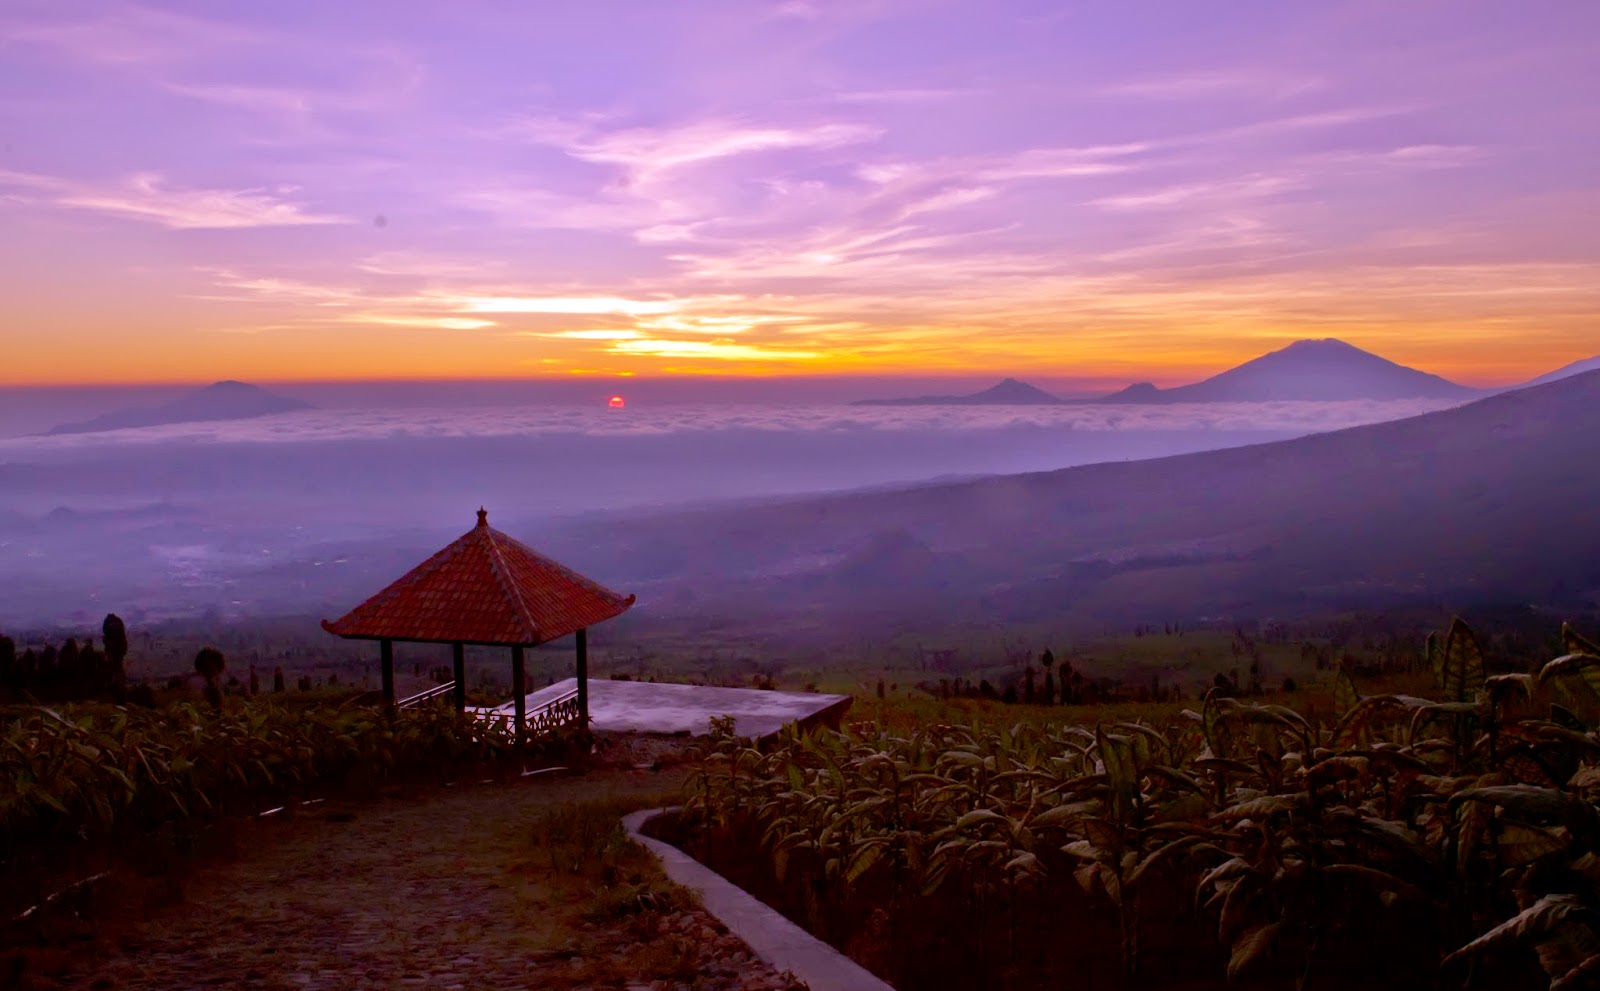 Daftar Objek Wisata Temanggung Wonosobo Jawa Tengah